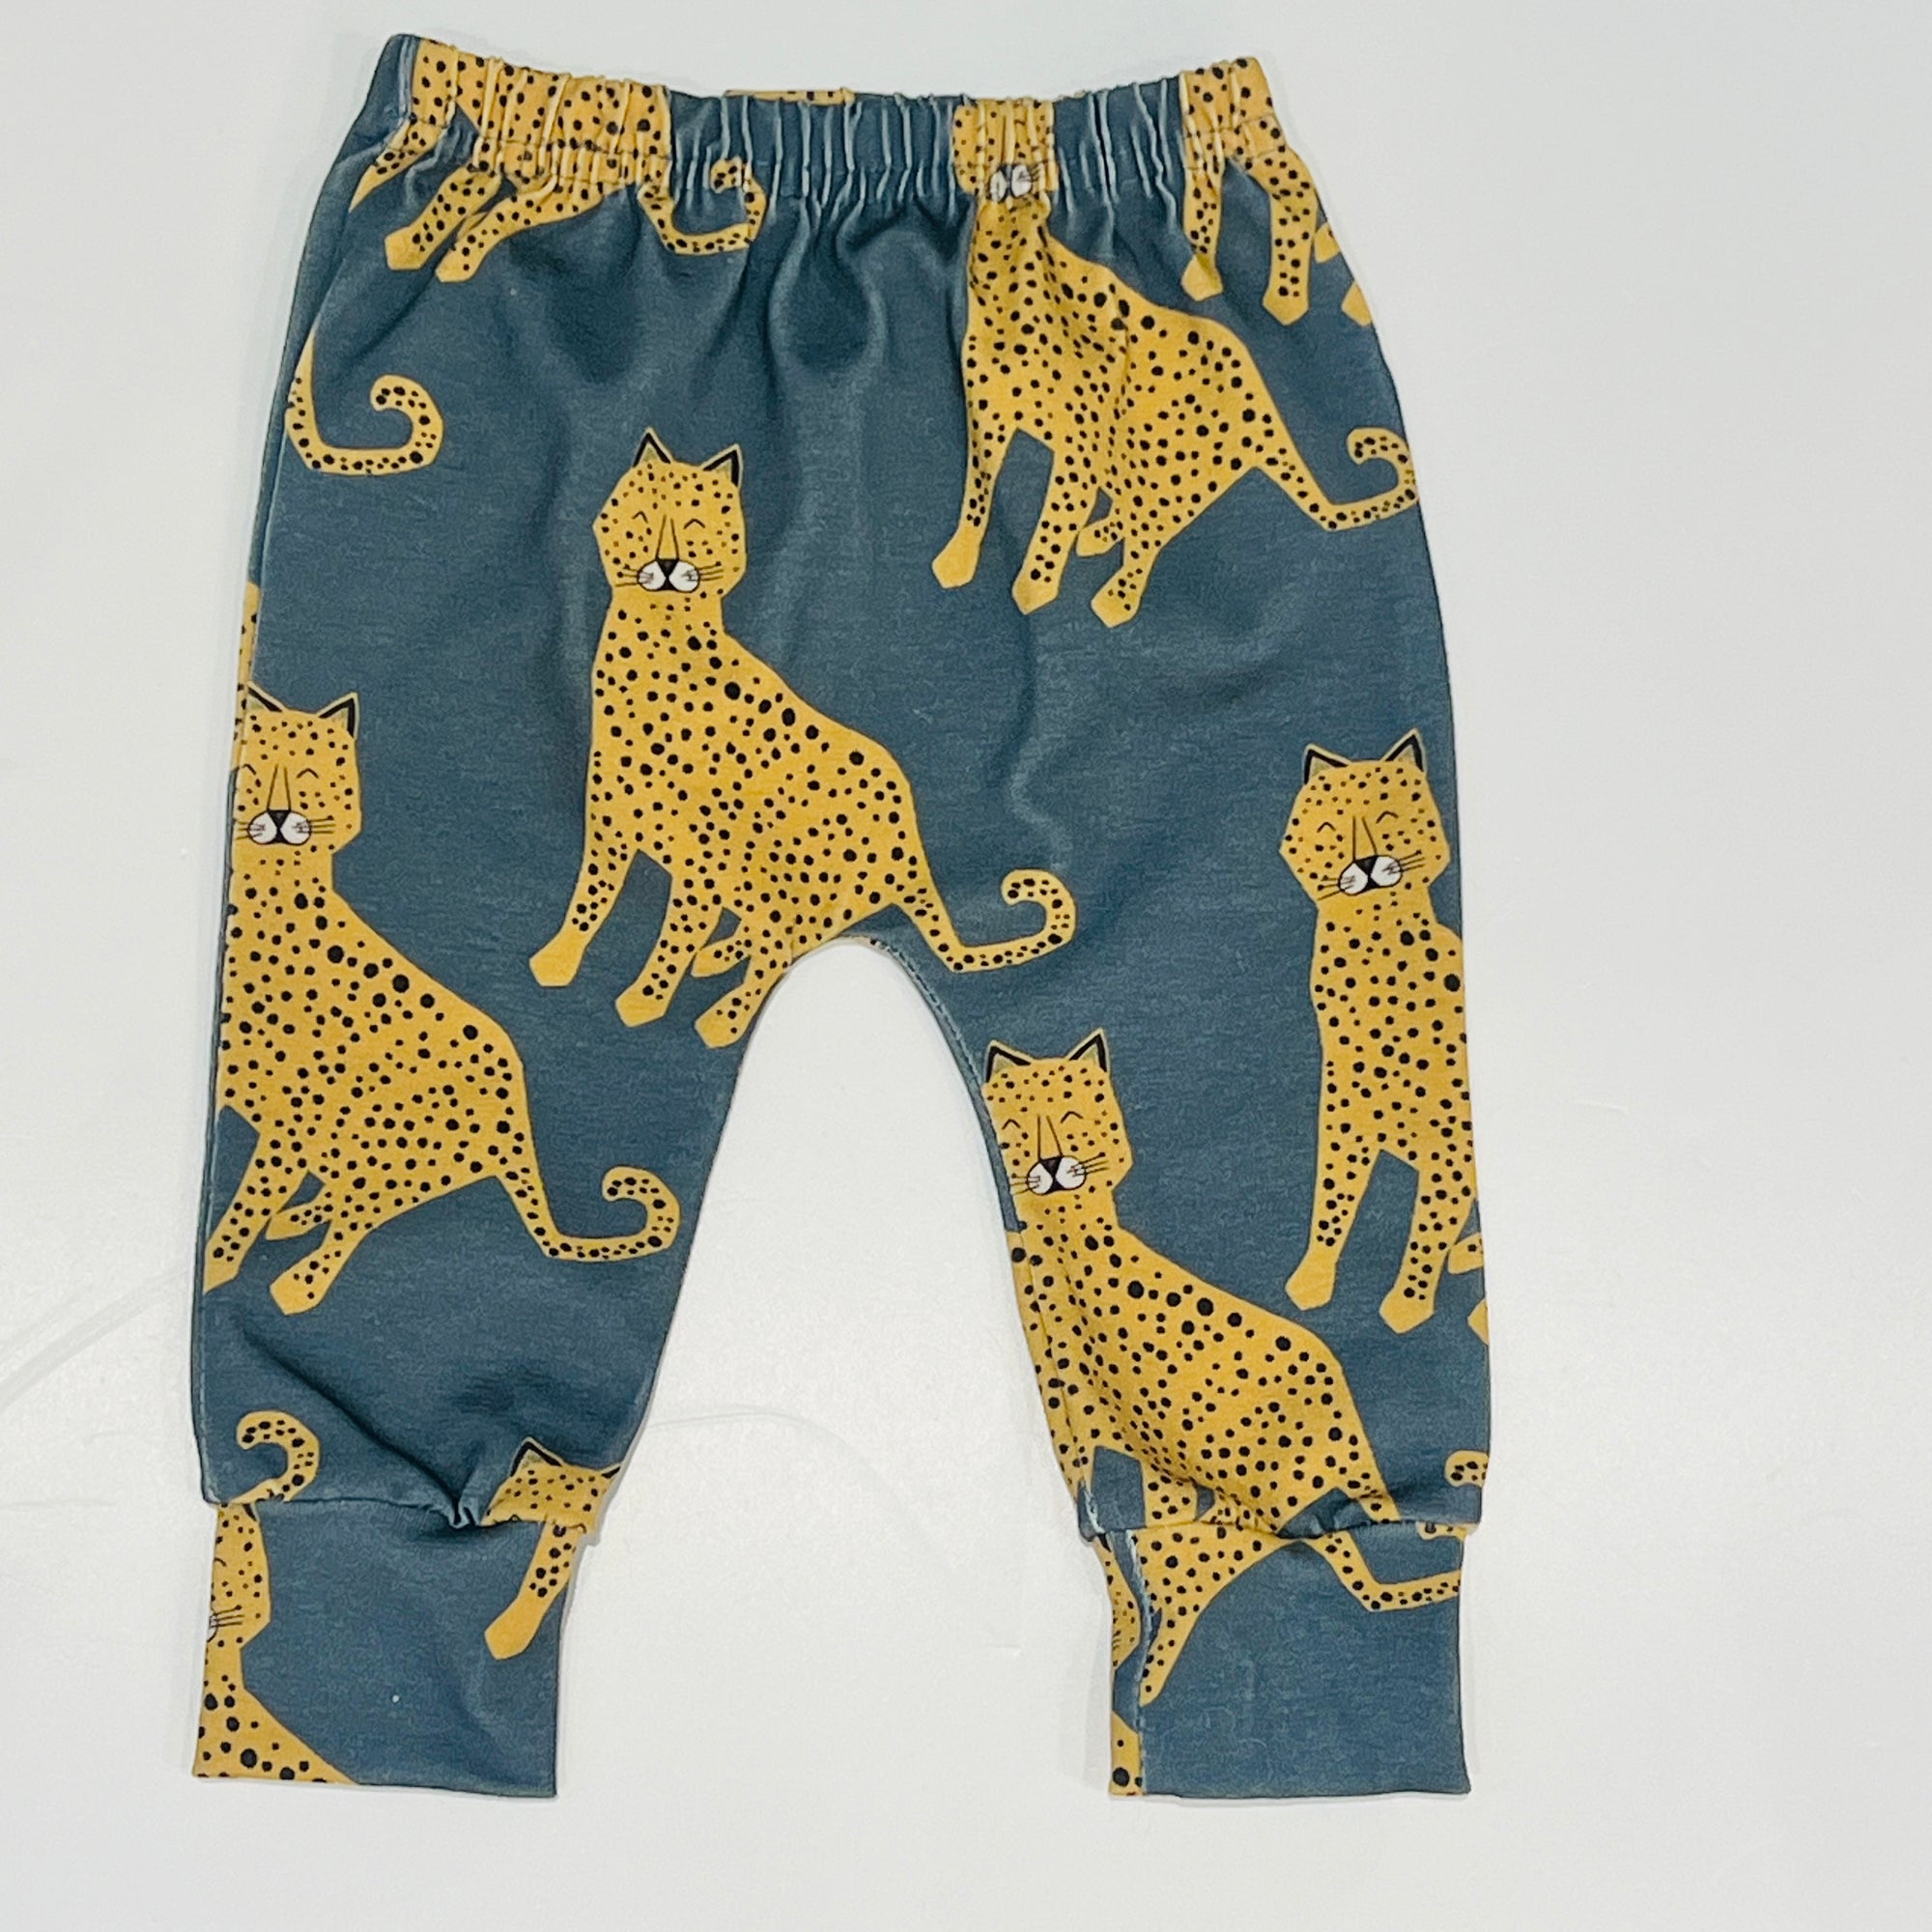 Eddie & Bee organic cotton leggings in Teal  "Happy leopard " print.